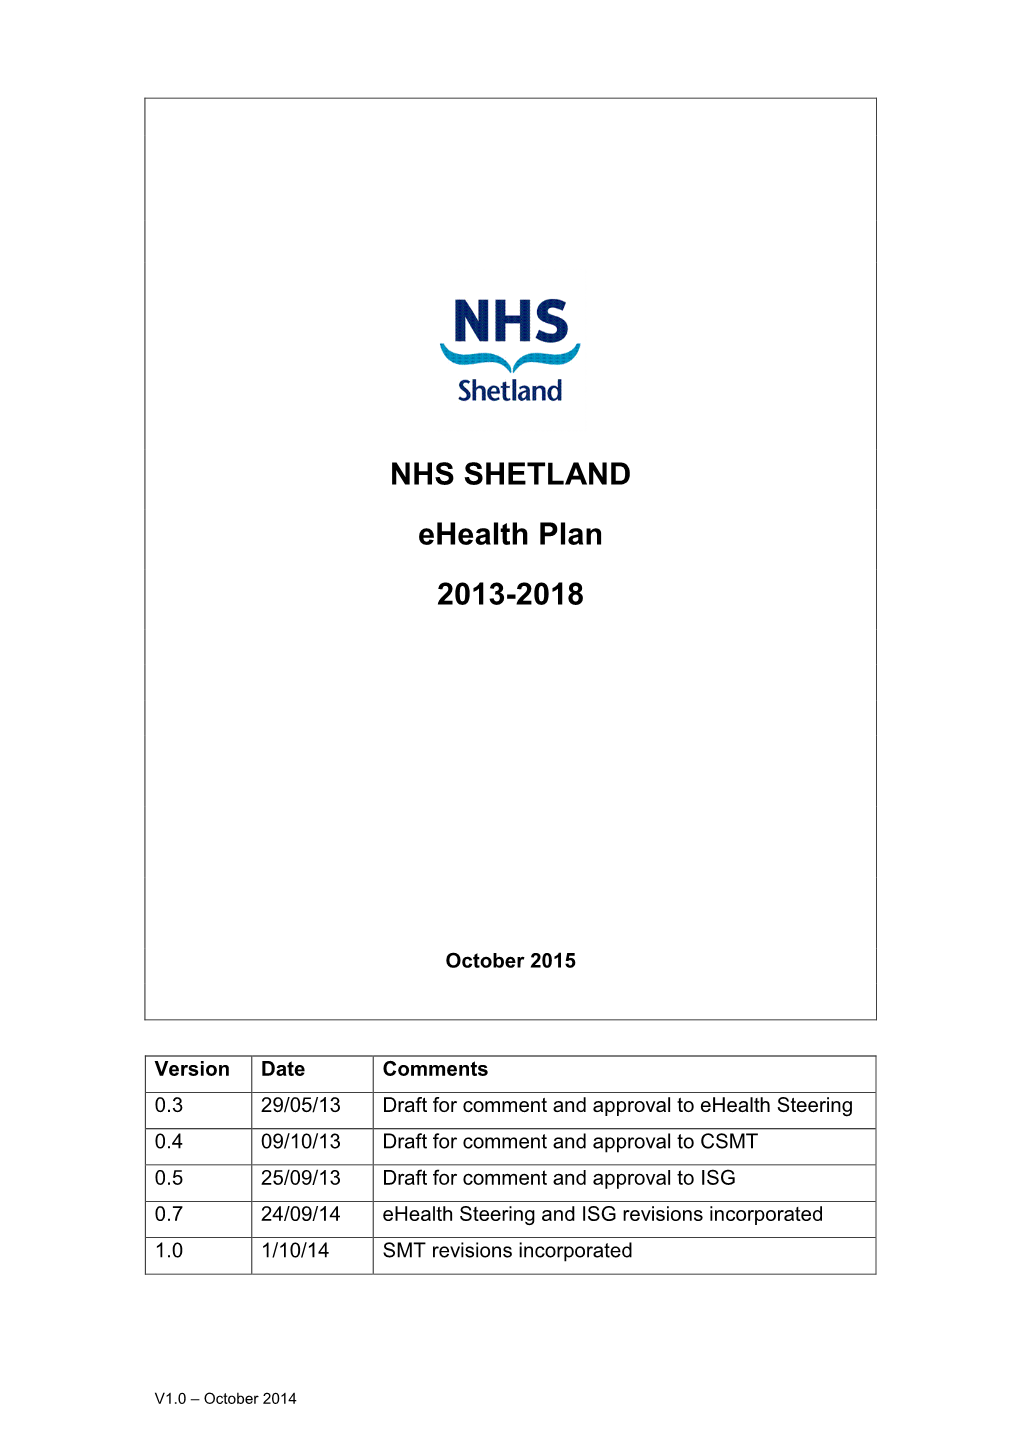 NHS SHETLAND Ehealth Plan 2013-2018